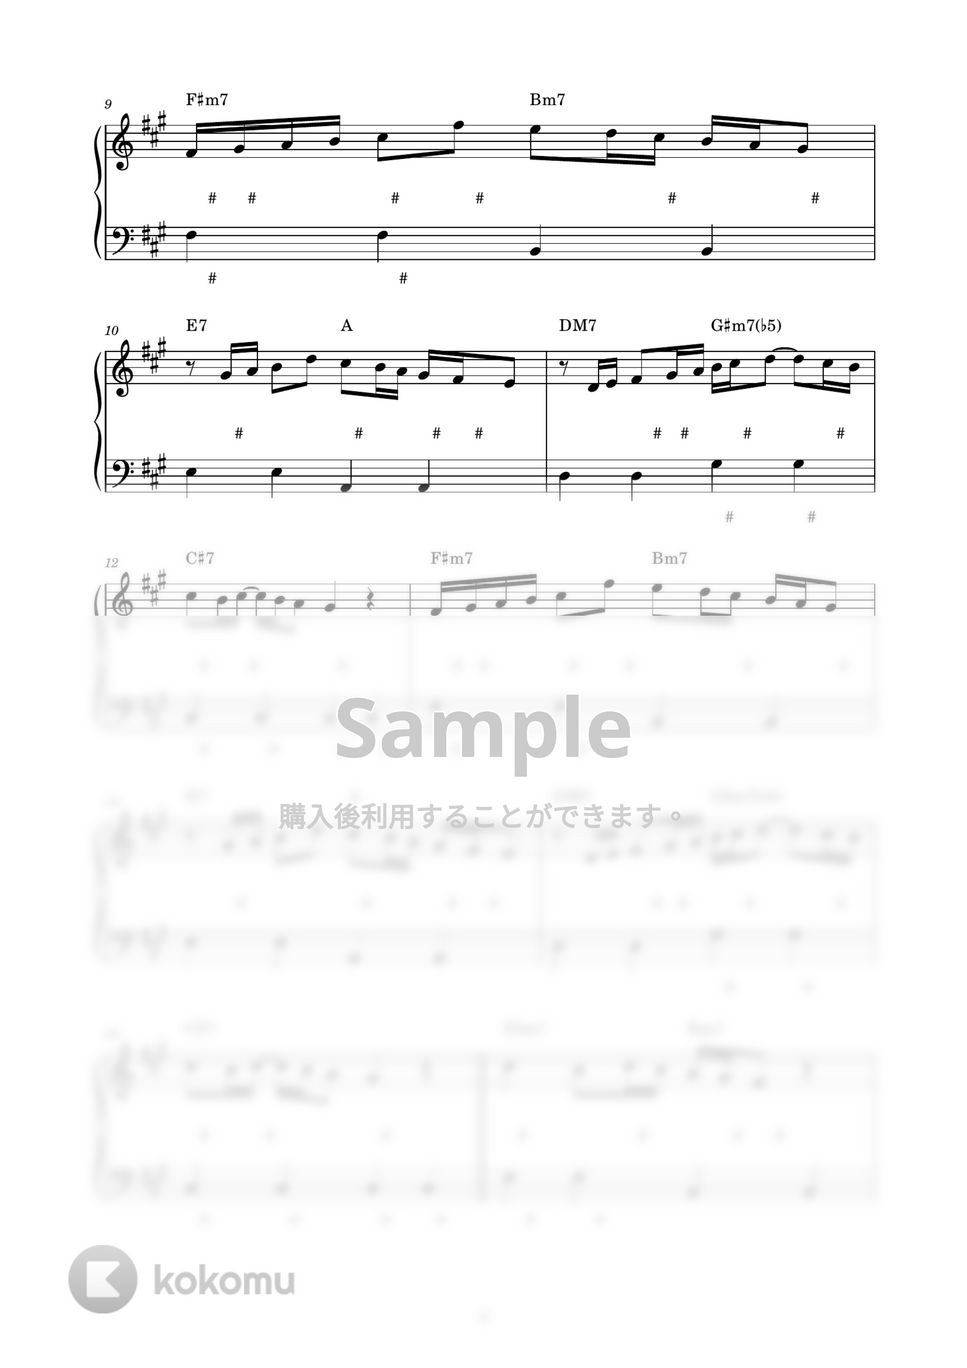 米津玄師 - POP SONG (ピアノ楽譜 / かんたん両手 / 歌詞付き / ドレミ付き / 初心者向き) by piano.tokyo